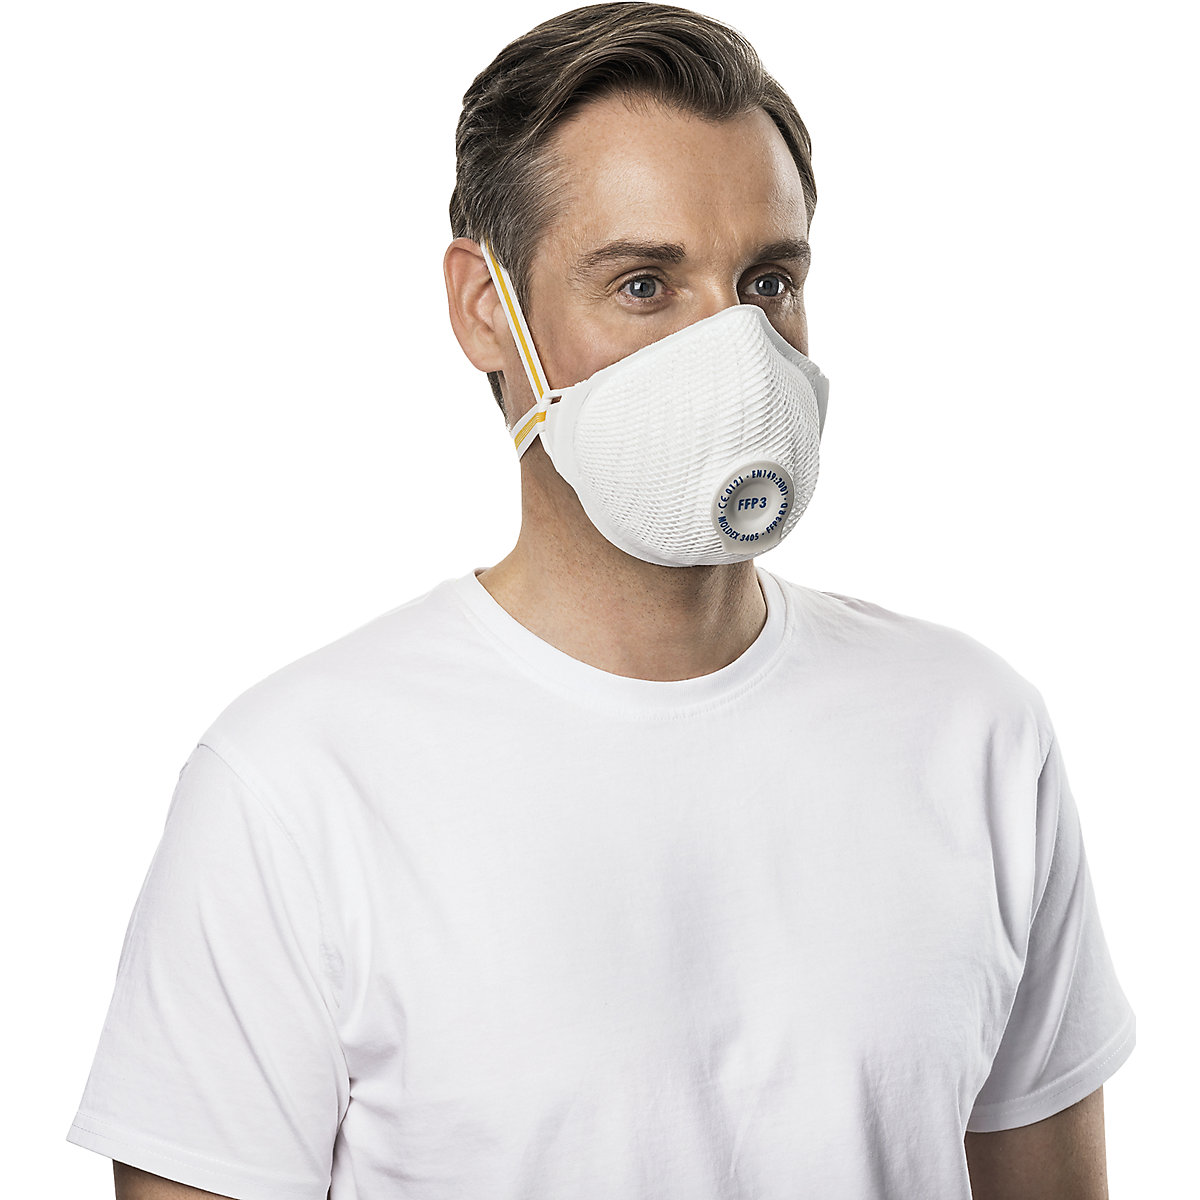 Masque de protection respiratoire FFP3 R D avec clapet d'expiration AIR PLUS – MOLDEX (Illustration du produit 4)-3